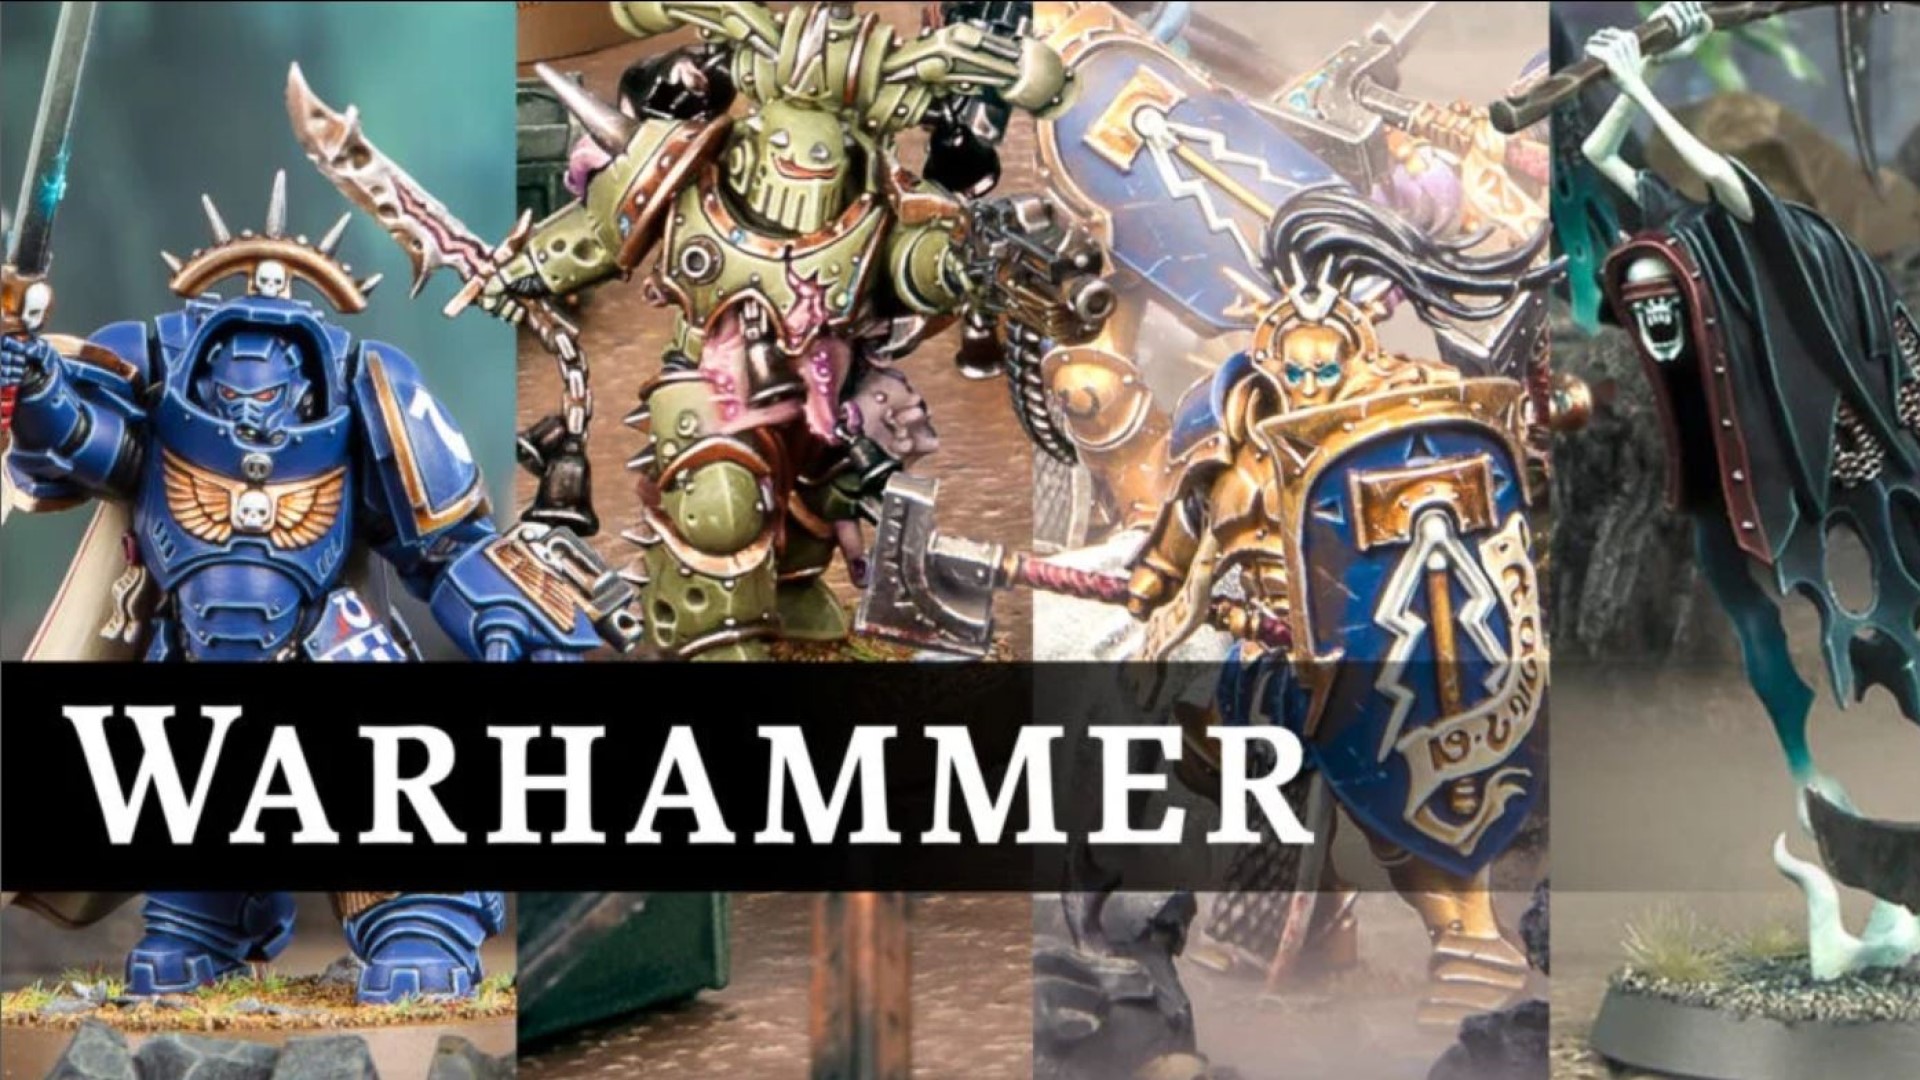 Warhammer deal spurs Games Workshop to £170m profit